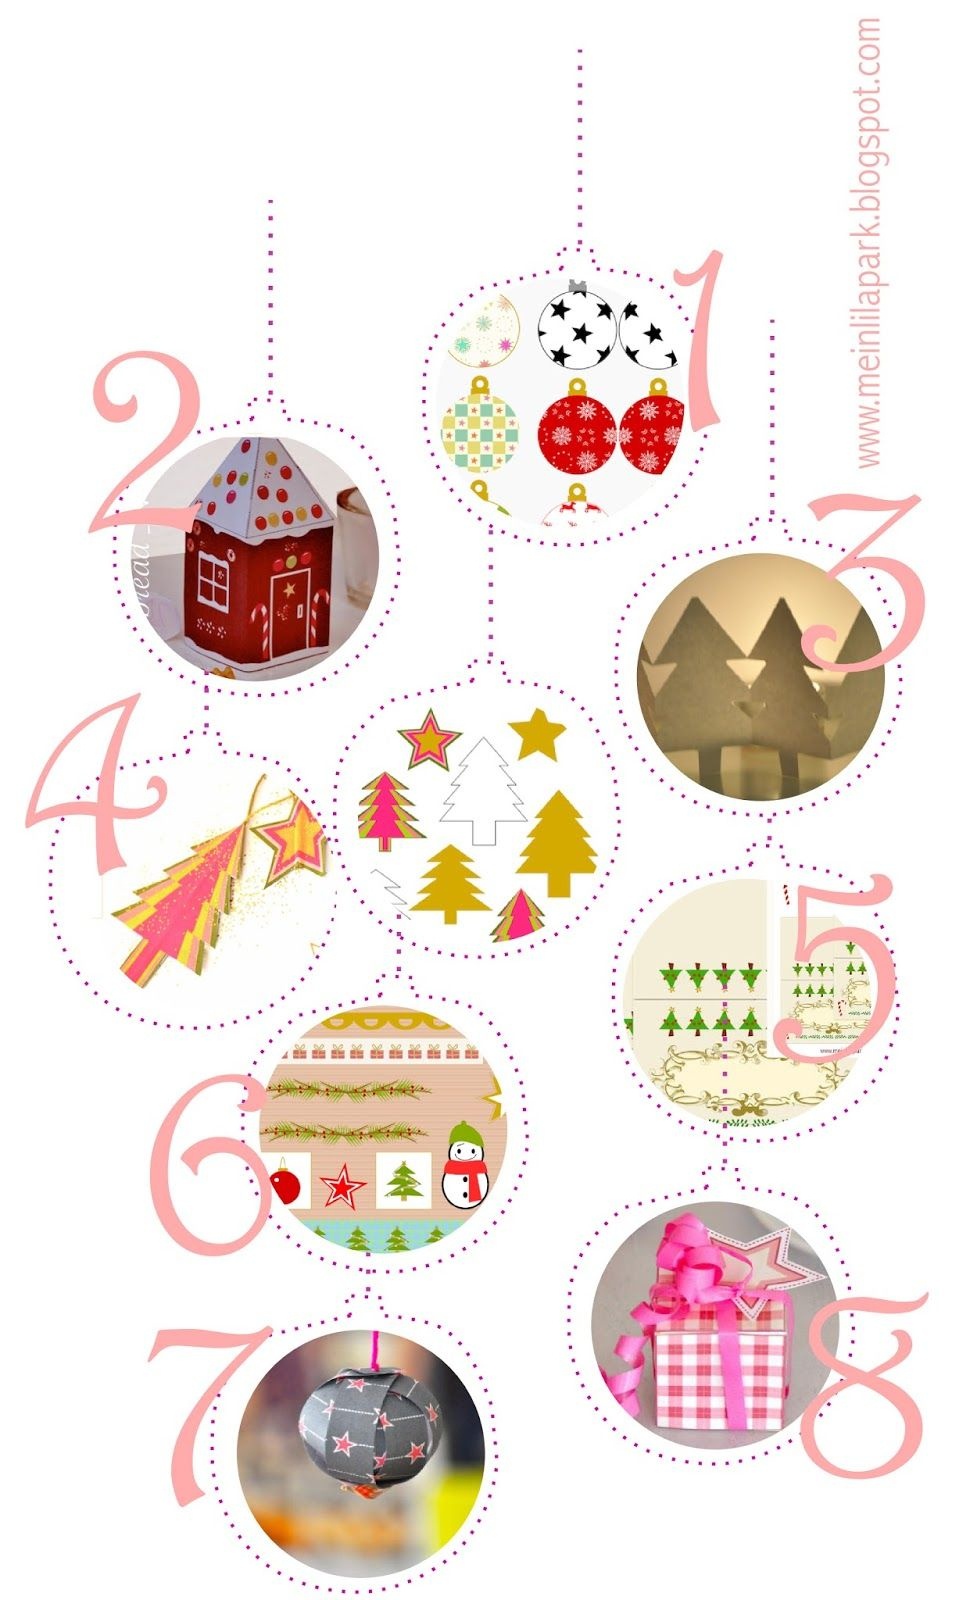 Free Printable Christmas Decorations - Ausdruckbare - Free Printable Christmas Decorations